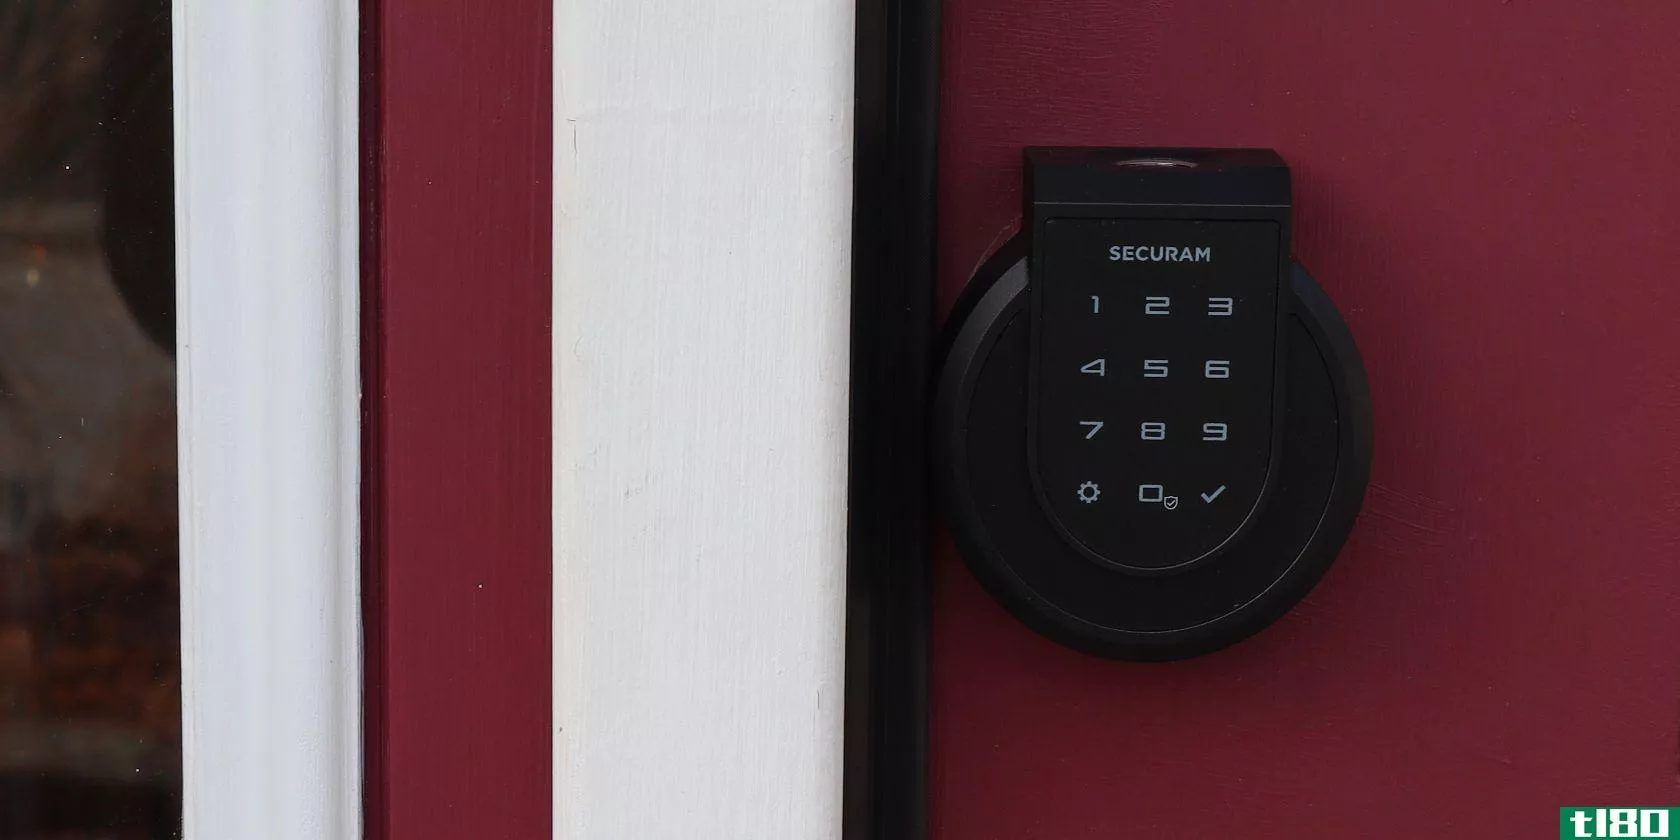 Securam Smart Lock Featured Image on Red Door